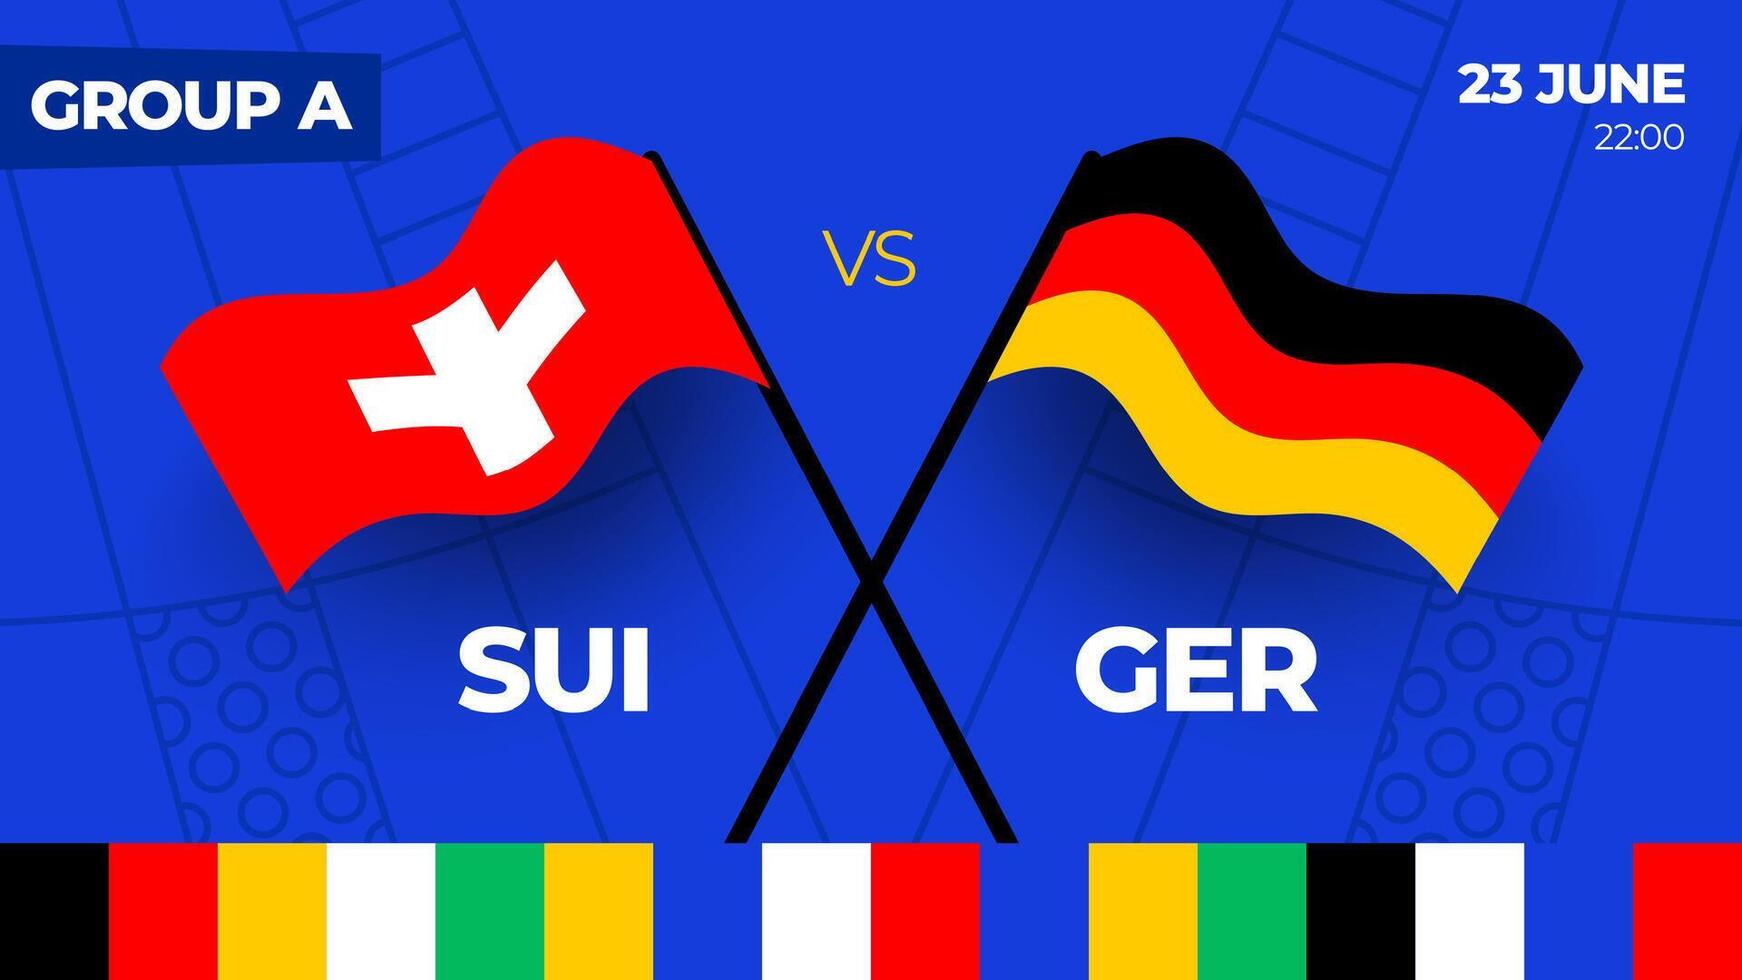 Zwitserland vs Duitsland Amerikaans voetbal 2024 bij elkaar passen versus. 2024 groep stadium kampioenschap bij elkaar passen versus teams intro sport achtergrond, kampioenschap wedstrijd vector